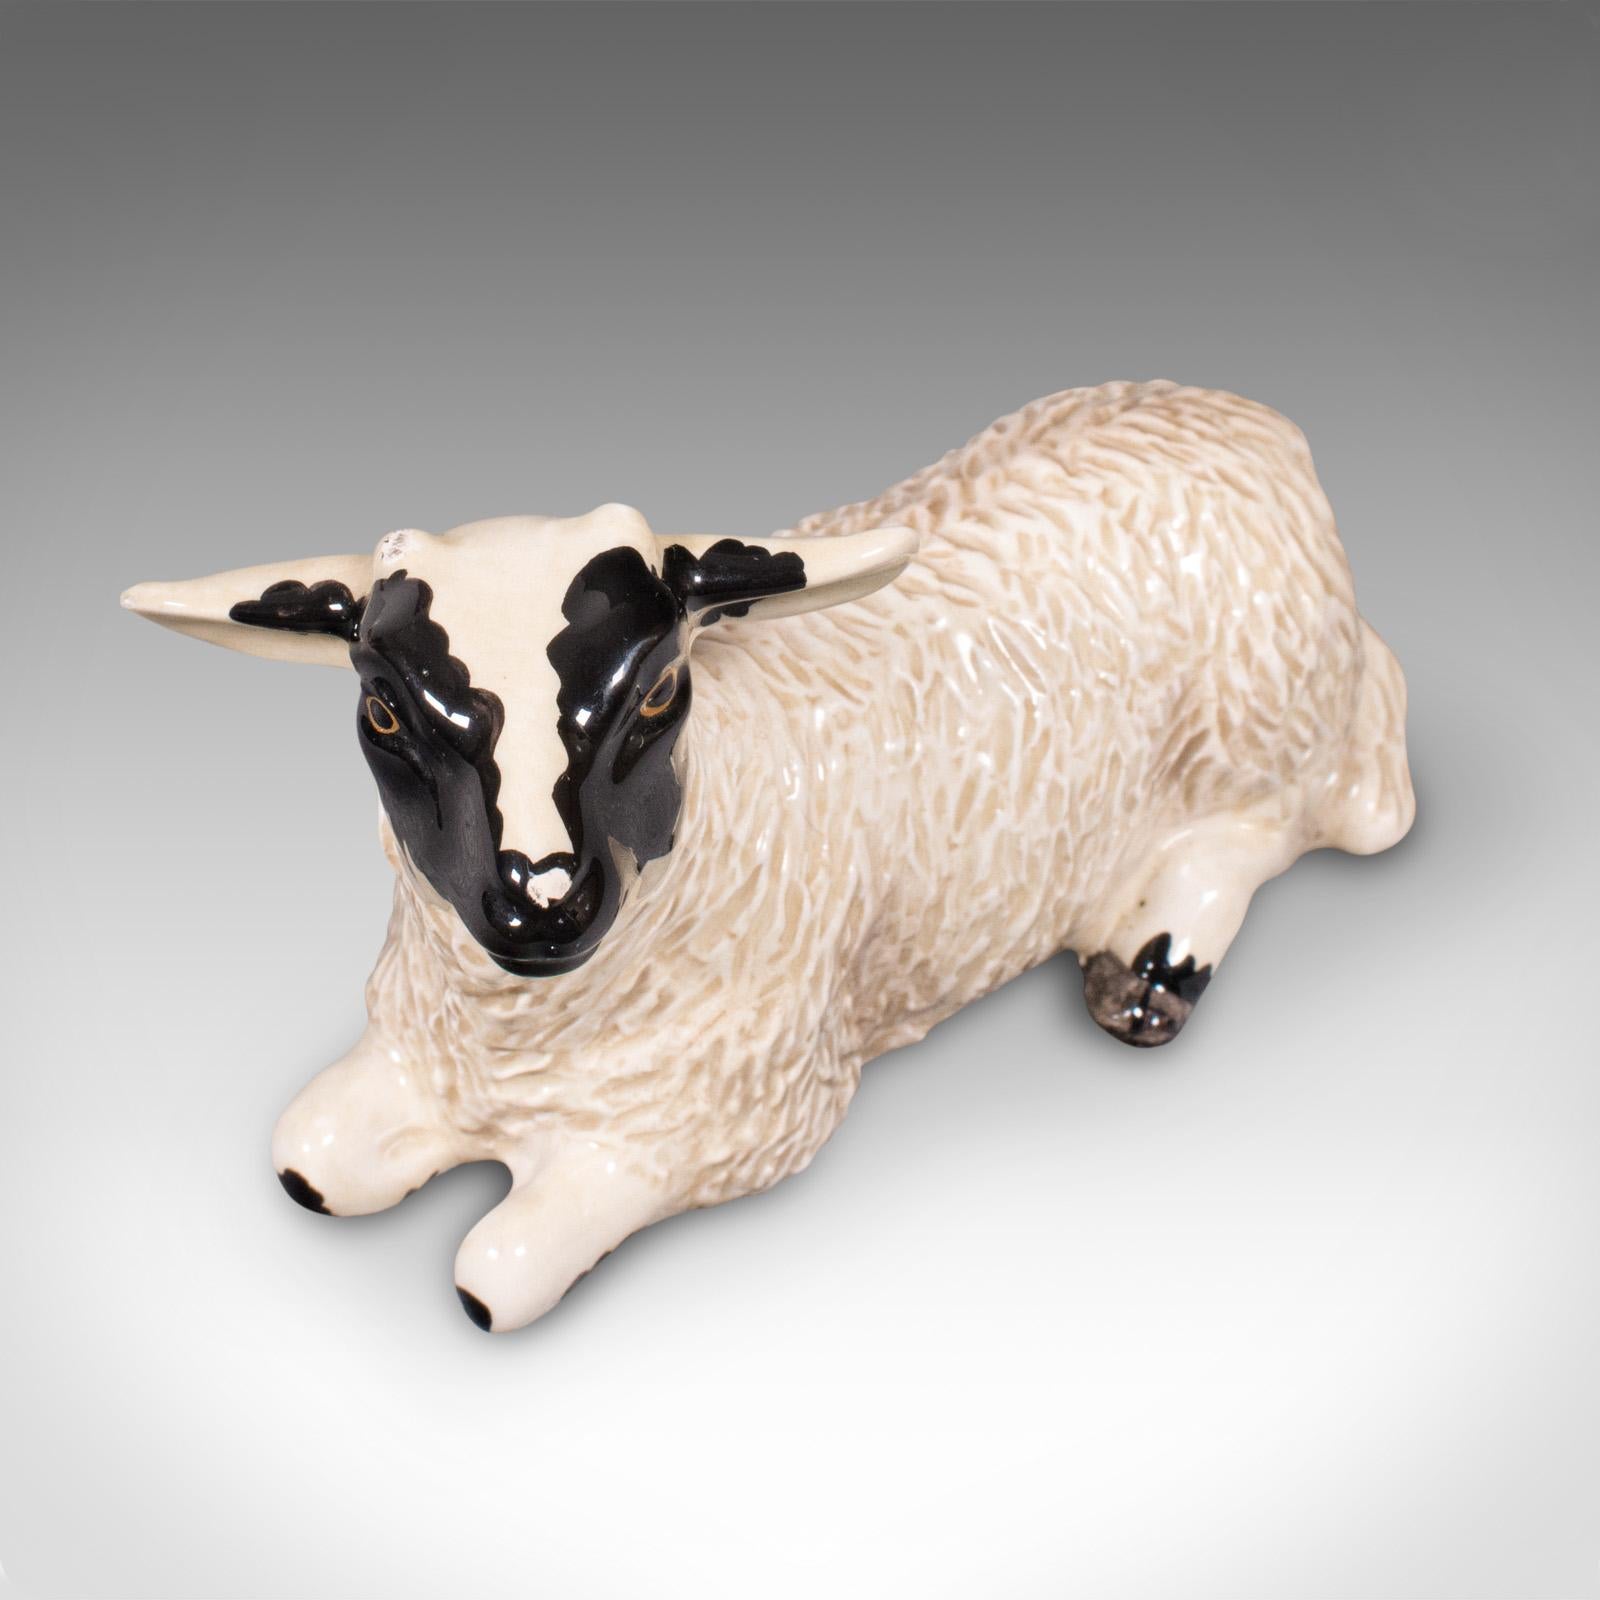 Small Vintage Decorative Lamb, English, Ceramic, Livestock Figure, circa 1990 For Sale 2